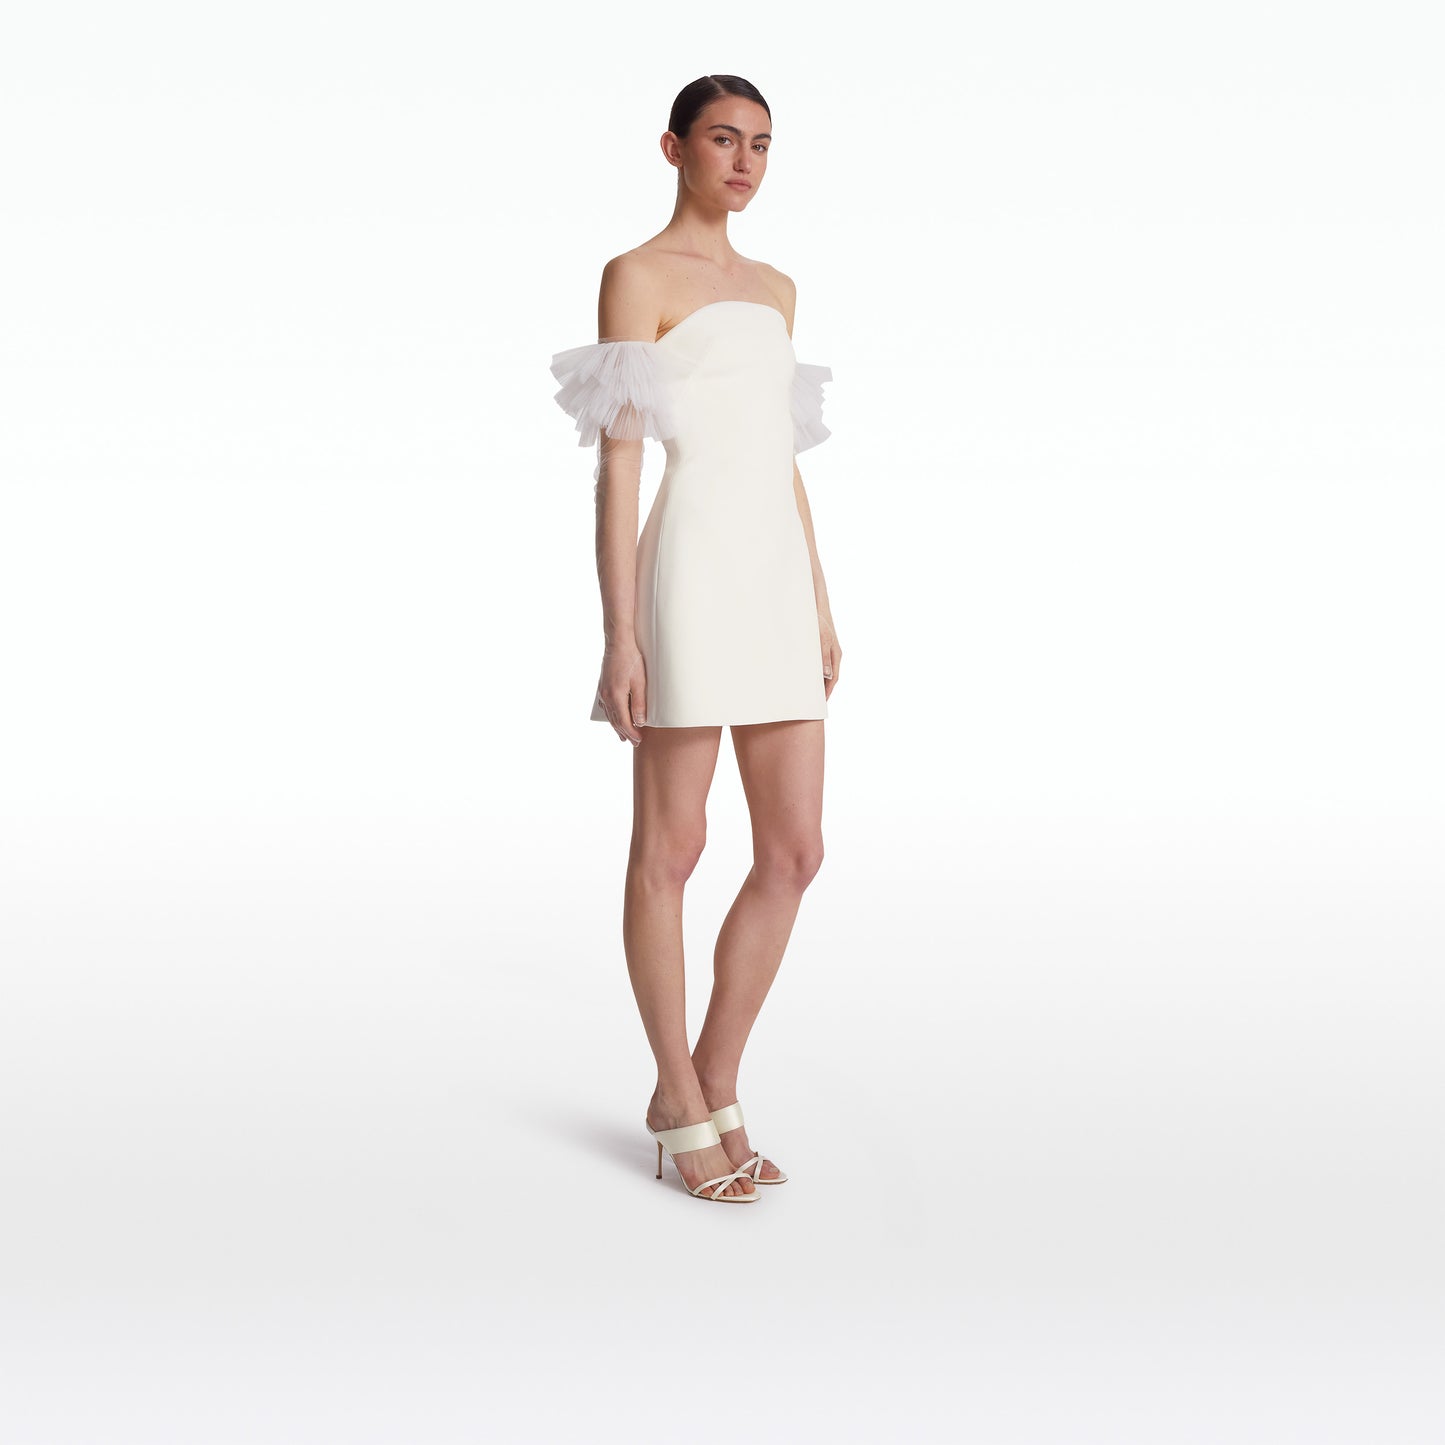 Rowan Ivory Short Dress